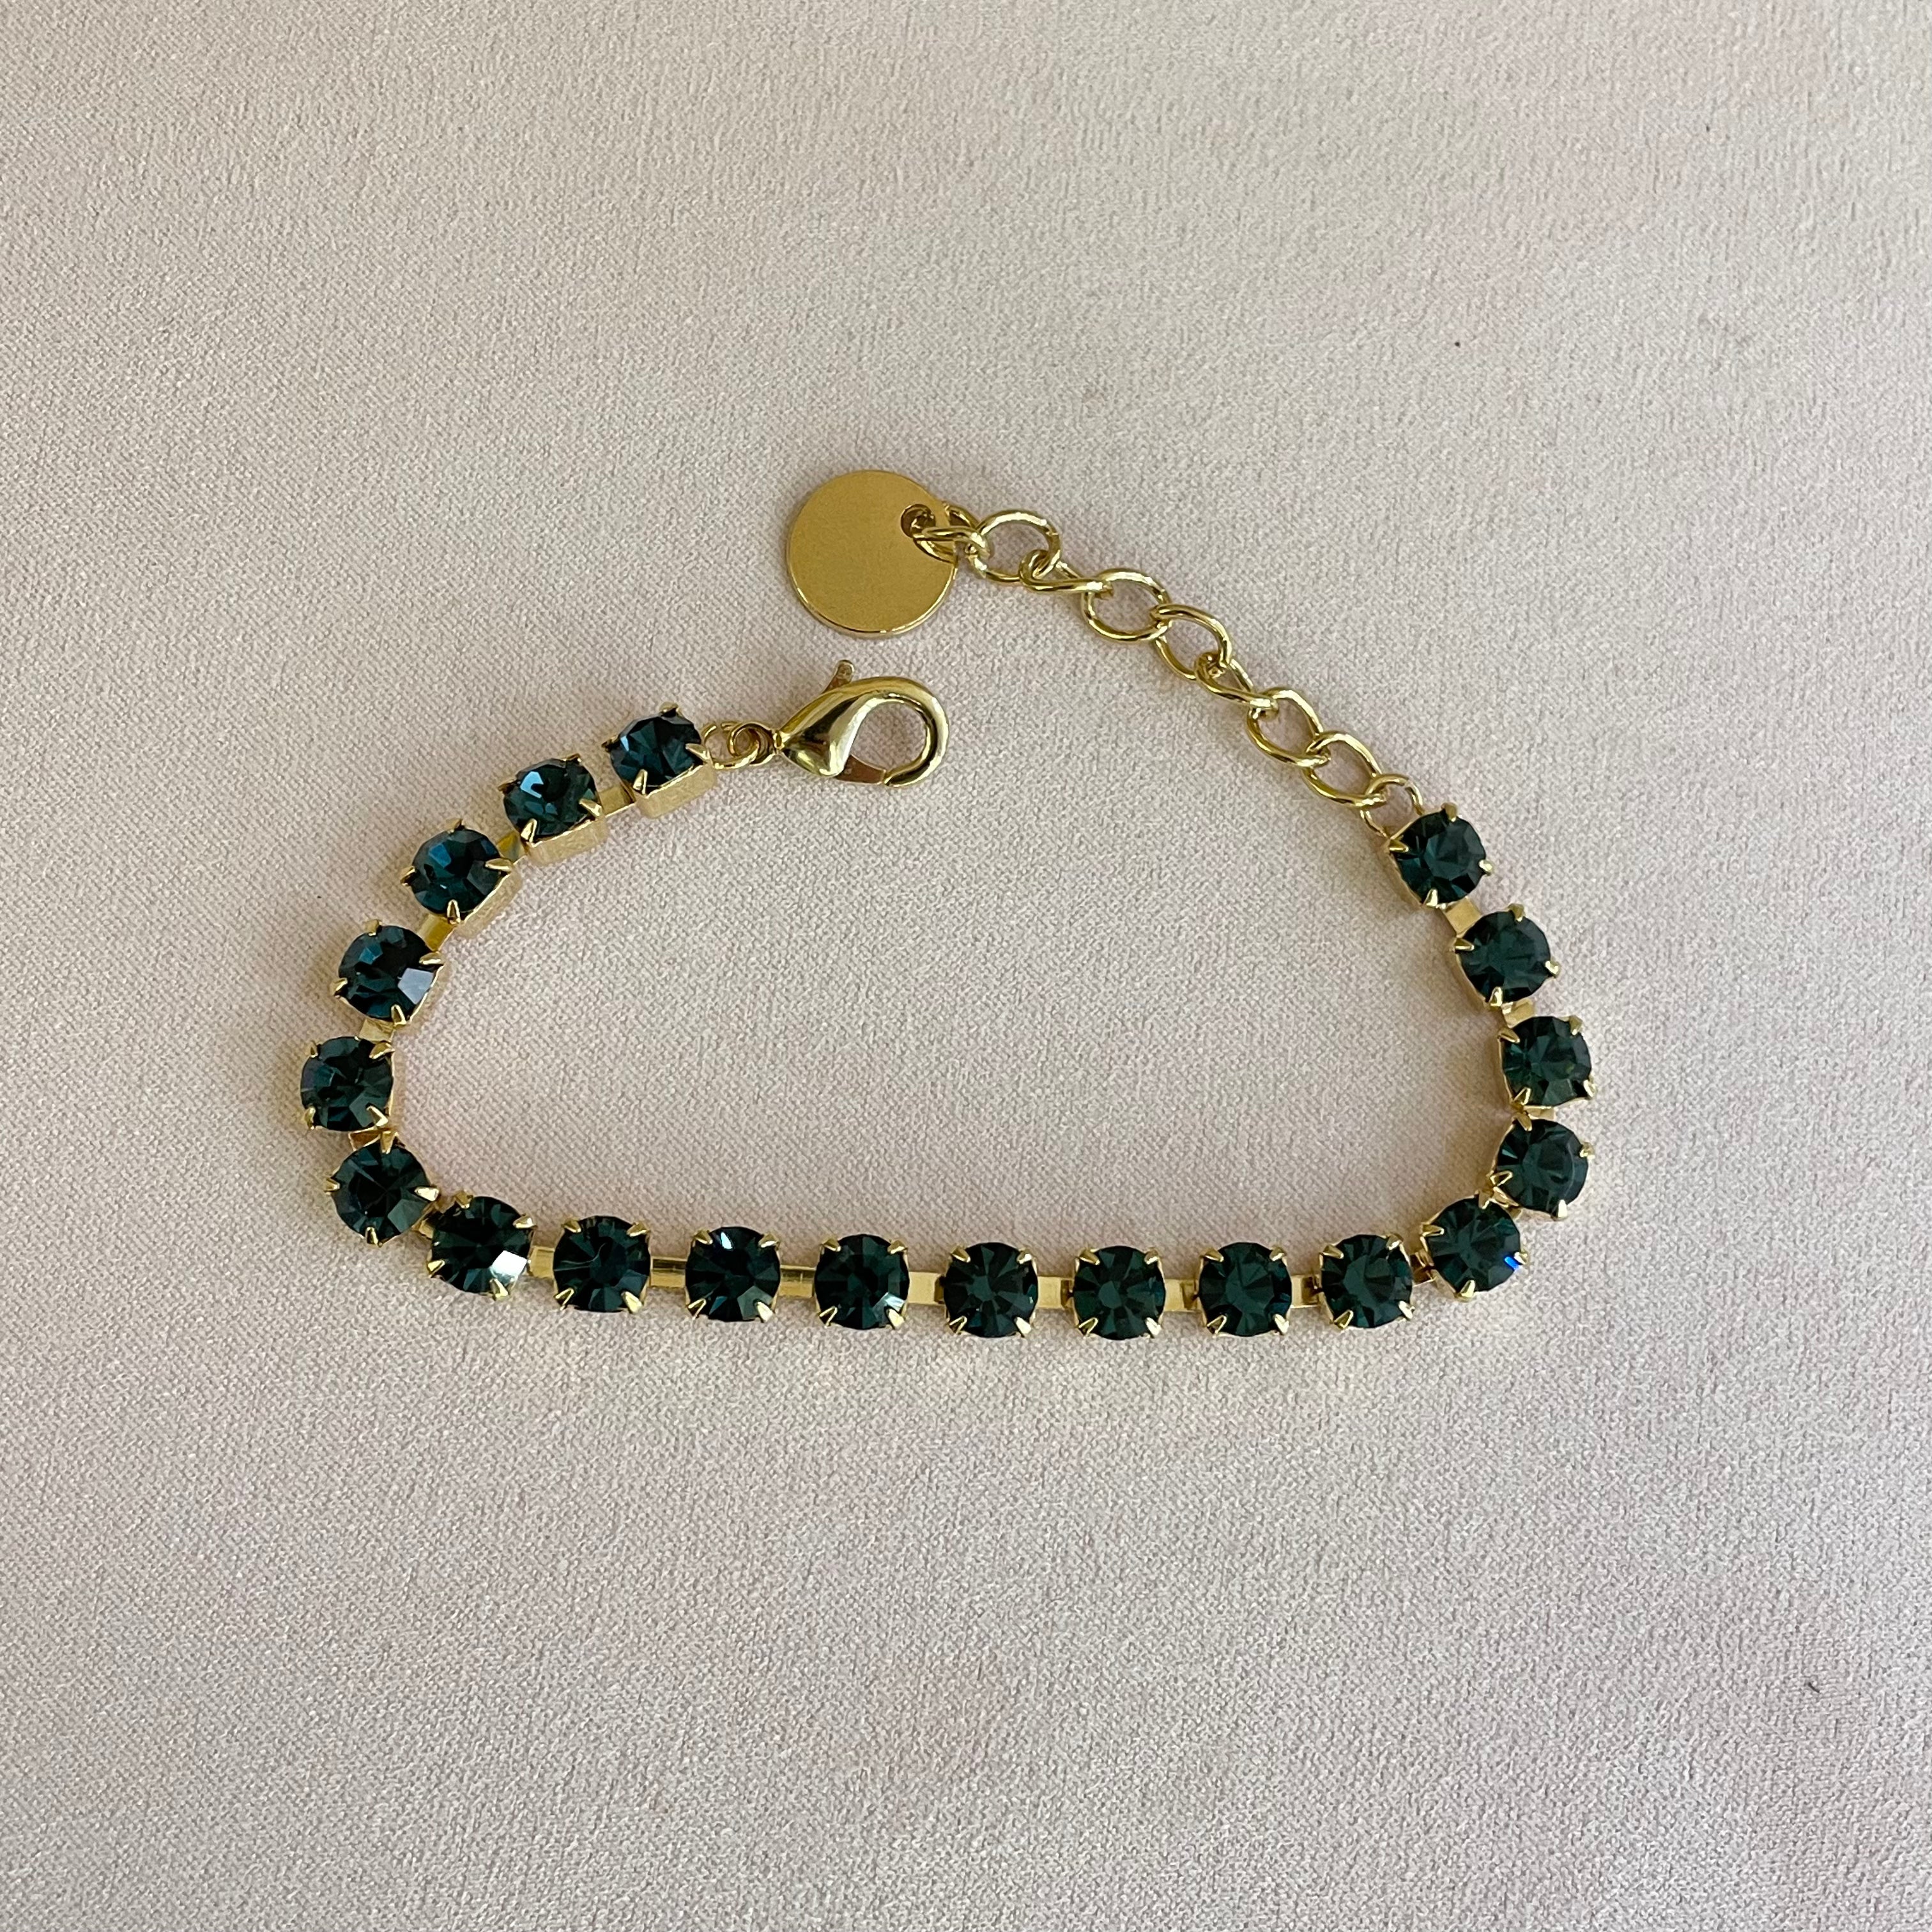 Navy blue Swarovski crystal bracelet